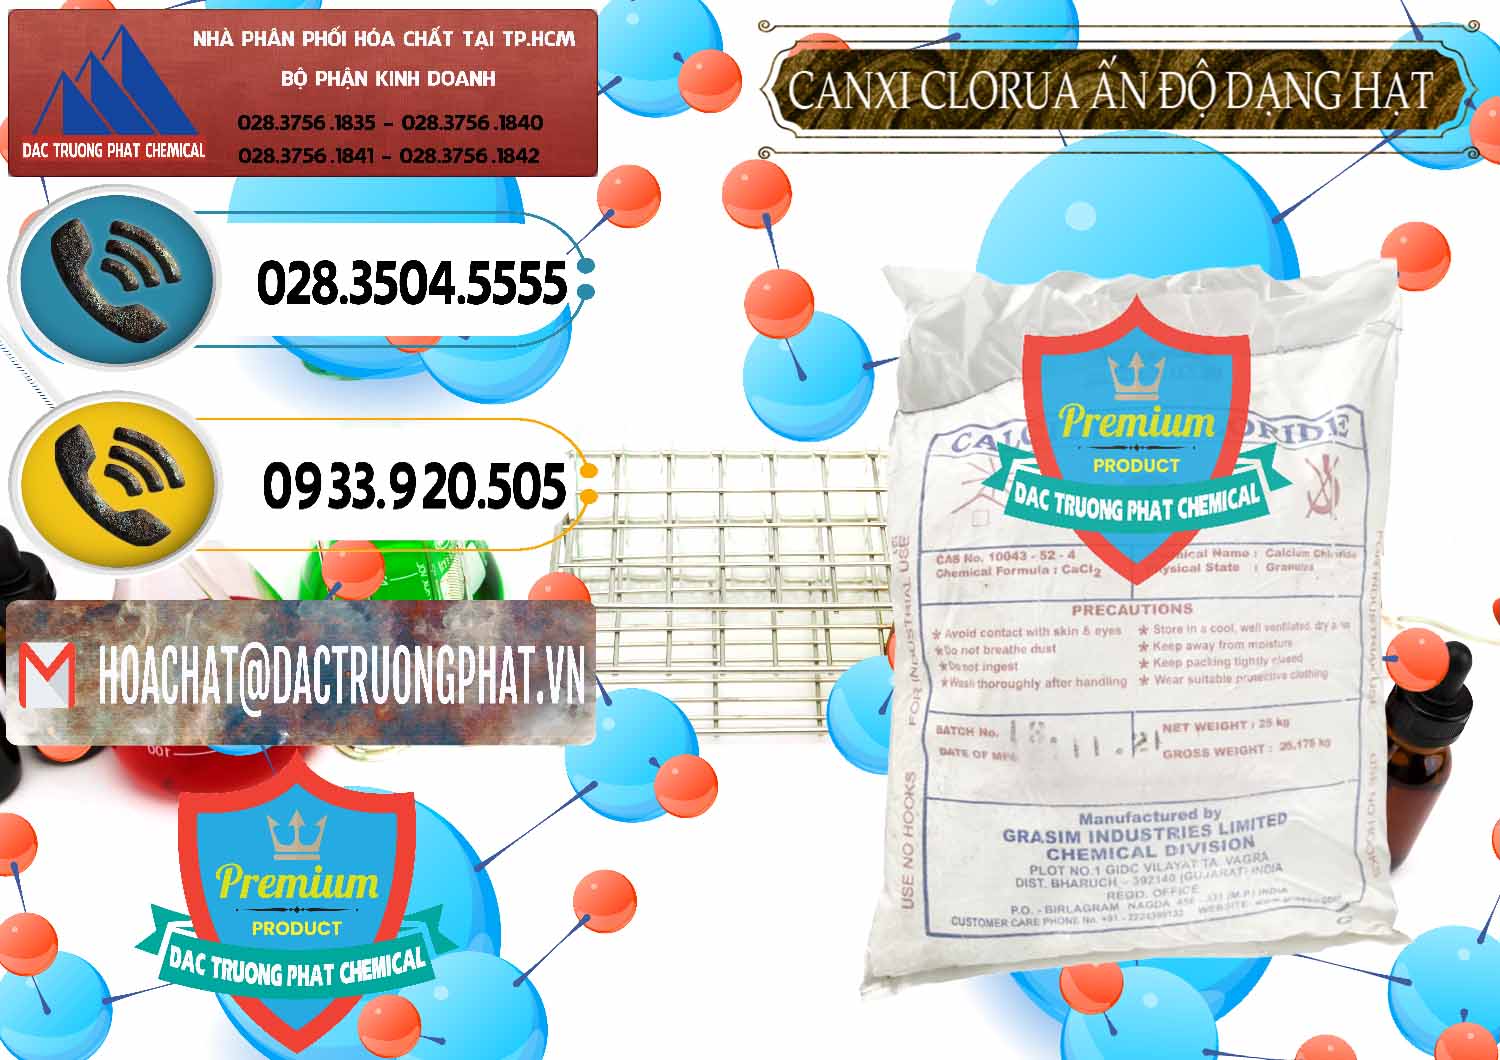 Bán & cung cấp CaCl2 – Canxi Clorua Dạng Hạt Aditya Birla Grasim Ấn Độ India - 0418 - Đơn vị cung cấp ( bán ) hóa chất tại TP.HCM - hoachatdetnhuom.vn